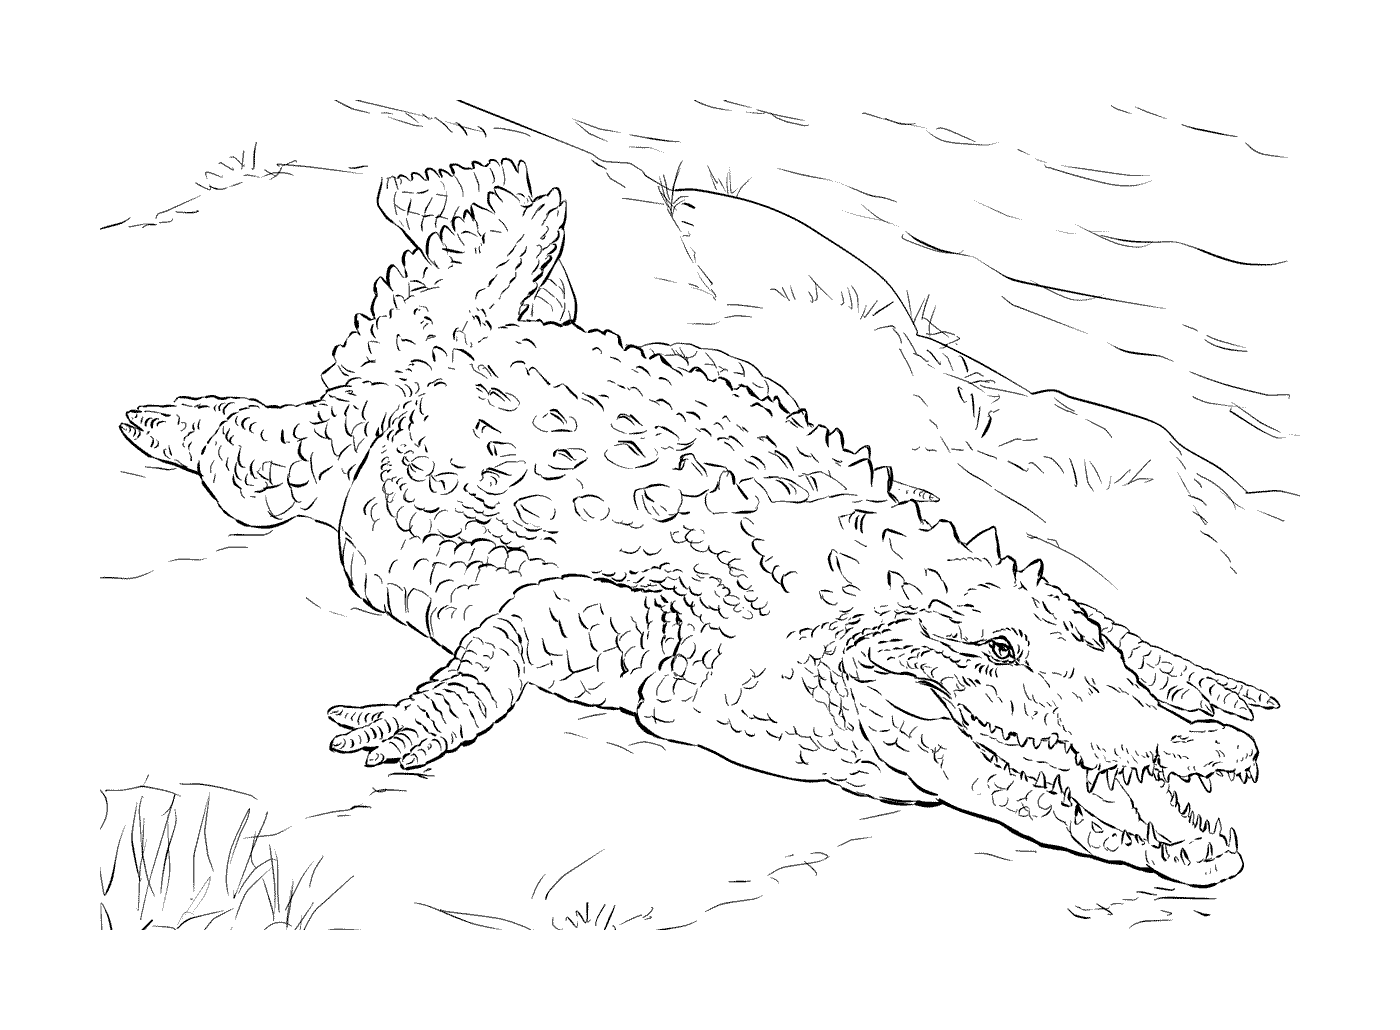   Un crocodile américain allongé dans l'herbe 